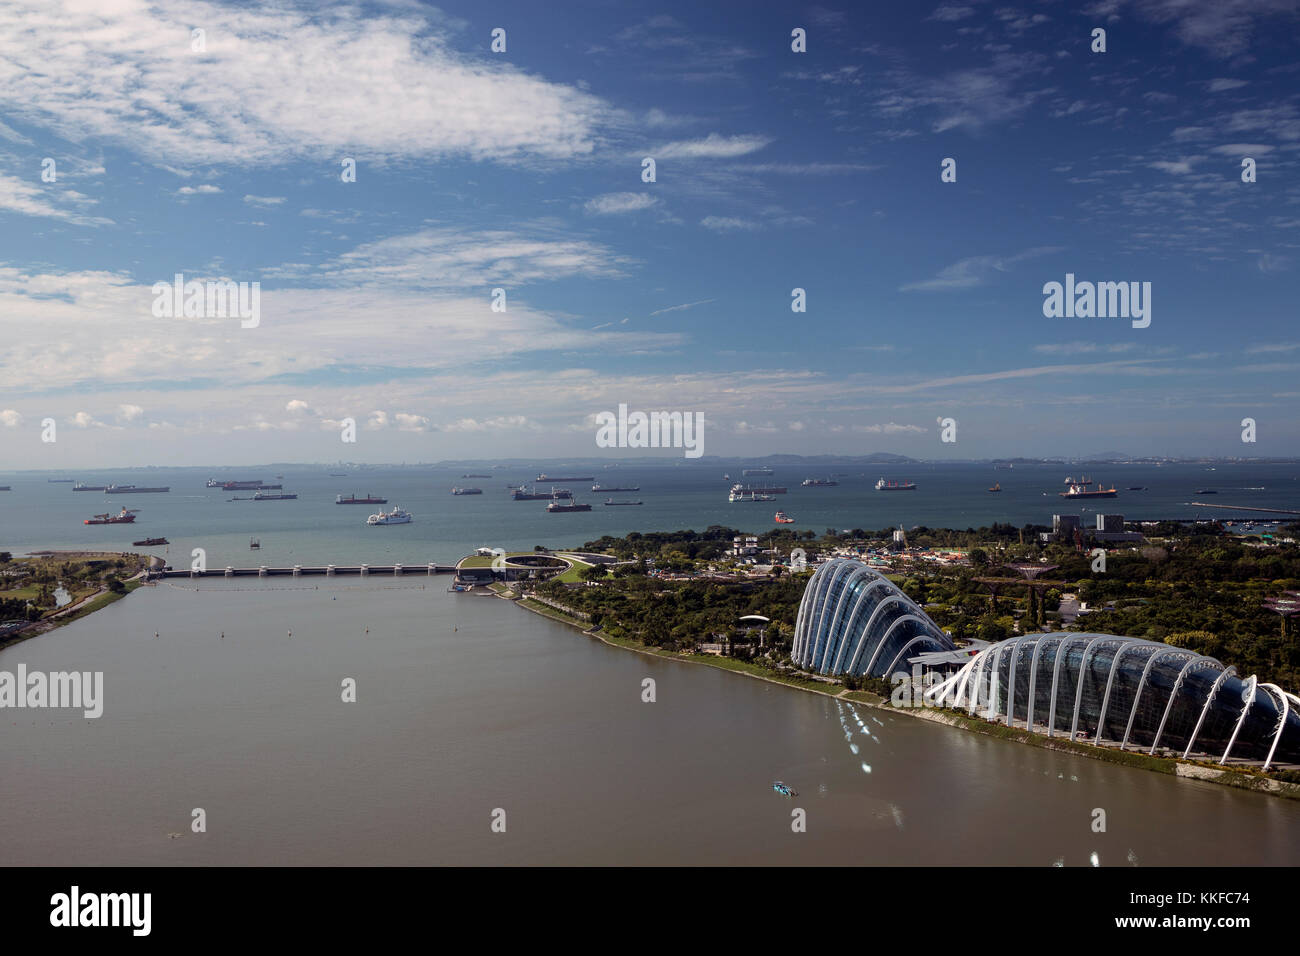 Tourné de jour de la région du parc de Sentosa à Singapour, prises à partir de la roue Singapore Flyer montrant l'horizon de Singapour Banque D'Images